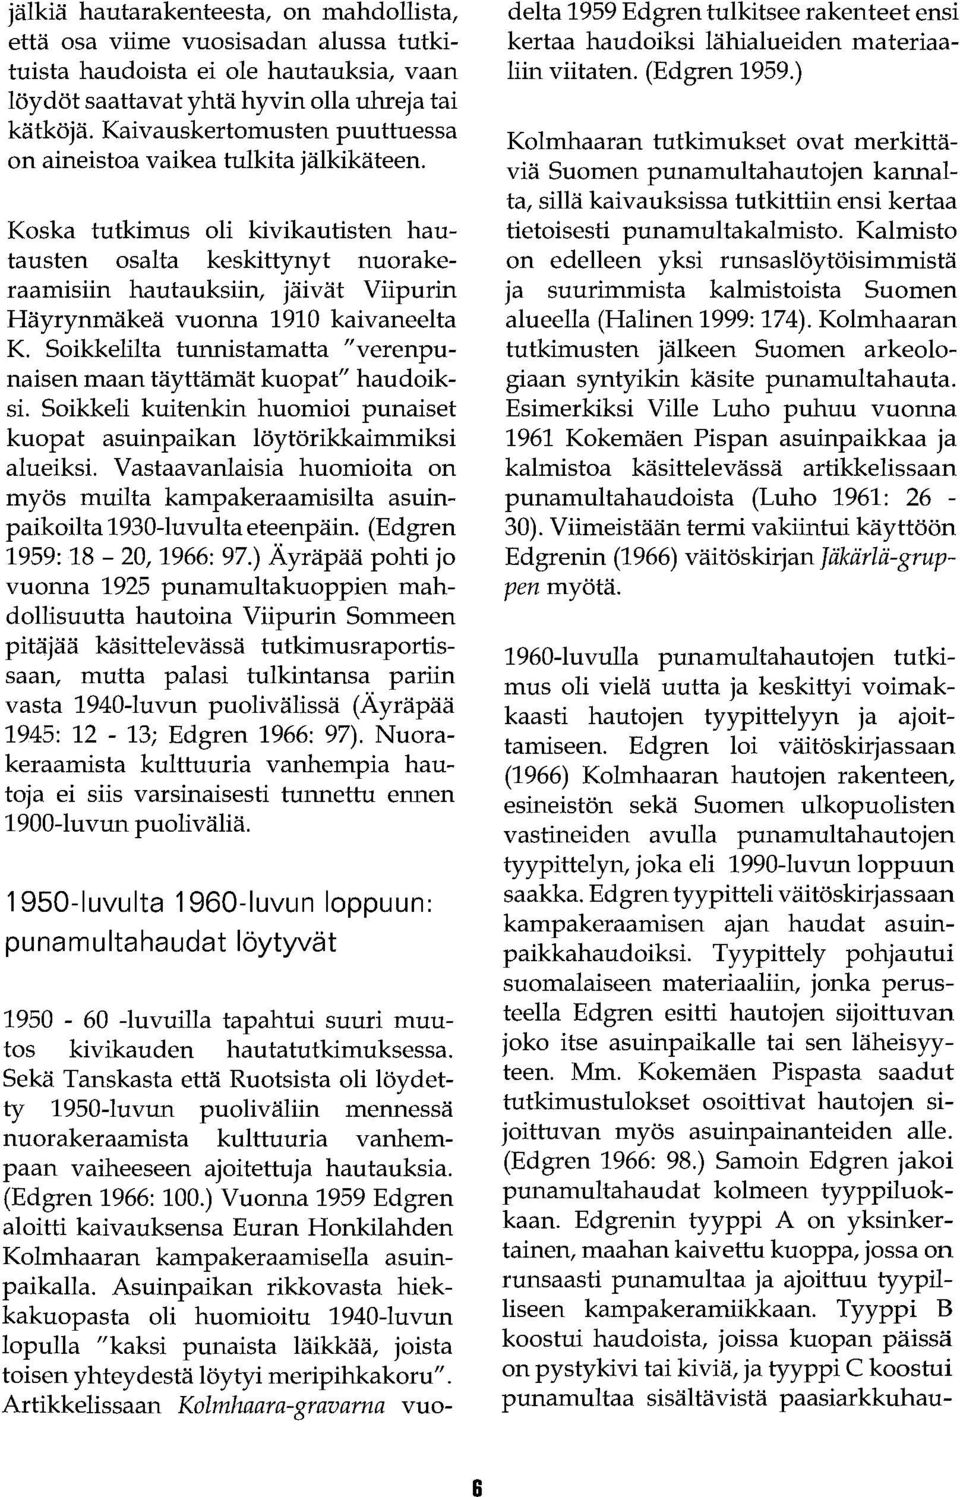 Koska tutkimus oli kivikautisten hautausten osalta keskittynyt nuorakeraamisiin hautauksiin, jäivät Viipurin Häyrynmäkeä vuonna 1910 kaivaneelta K.